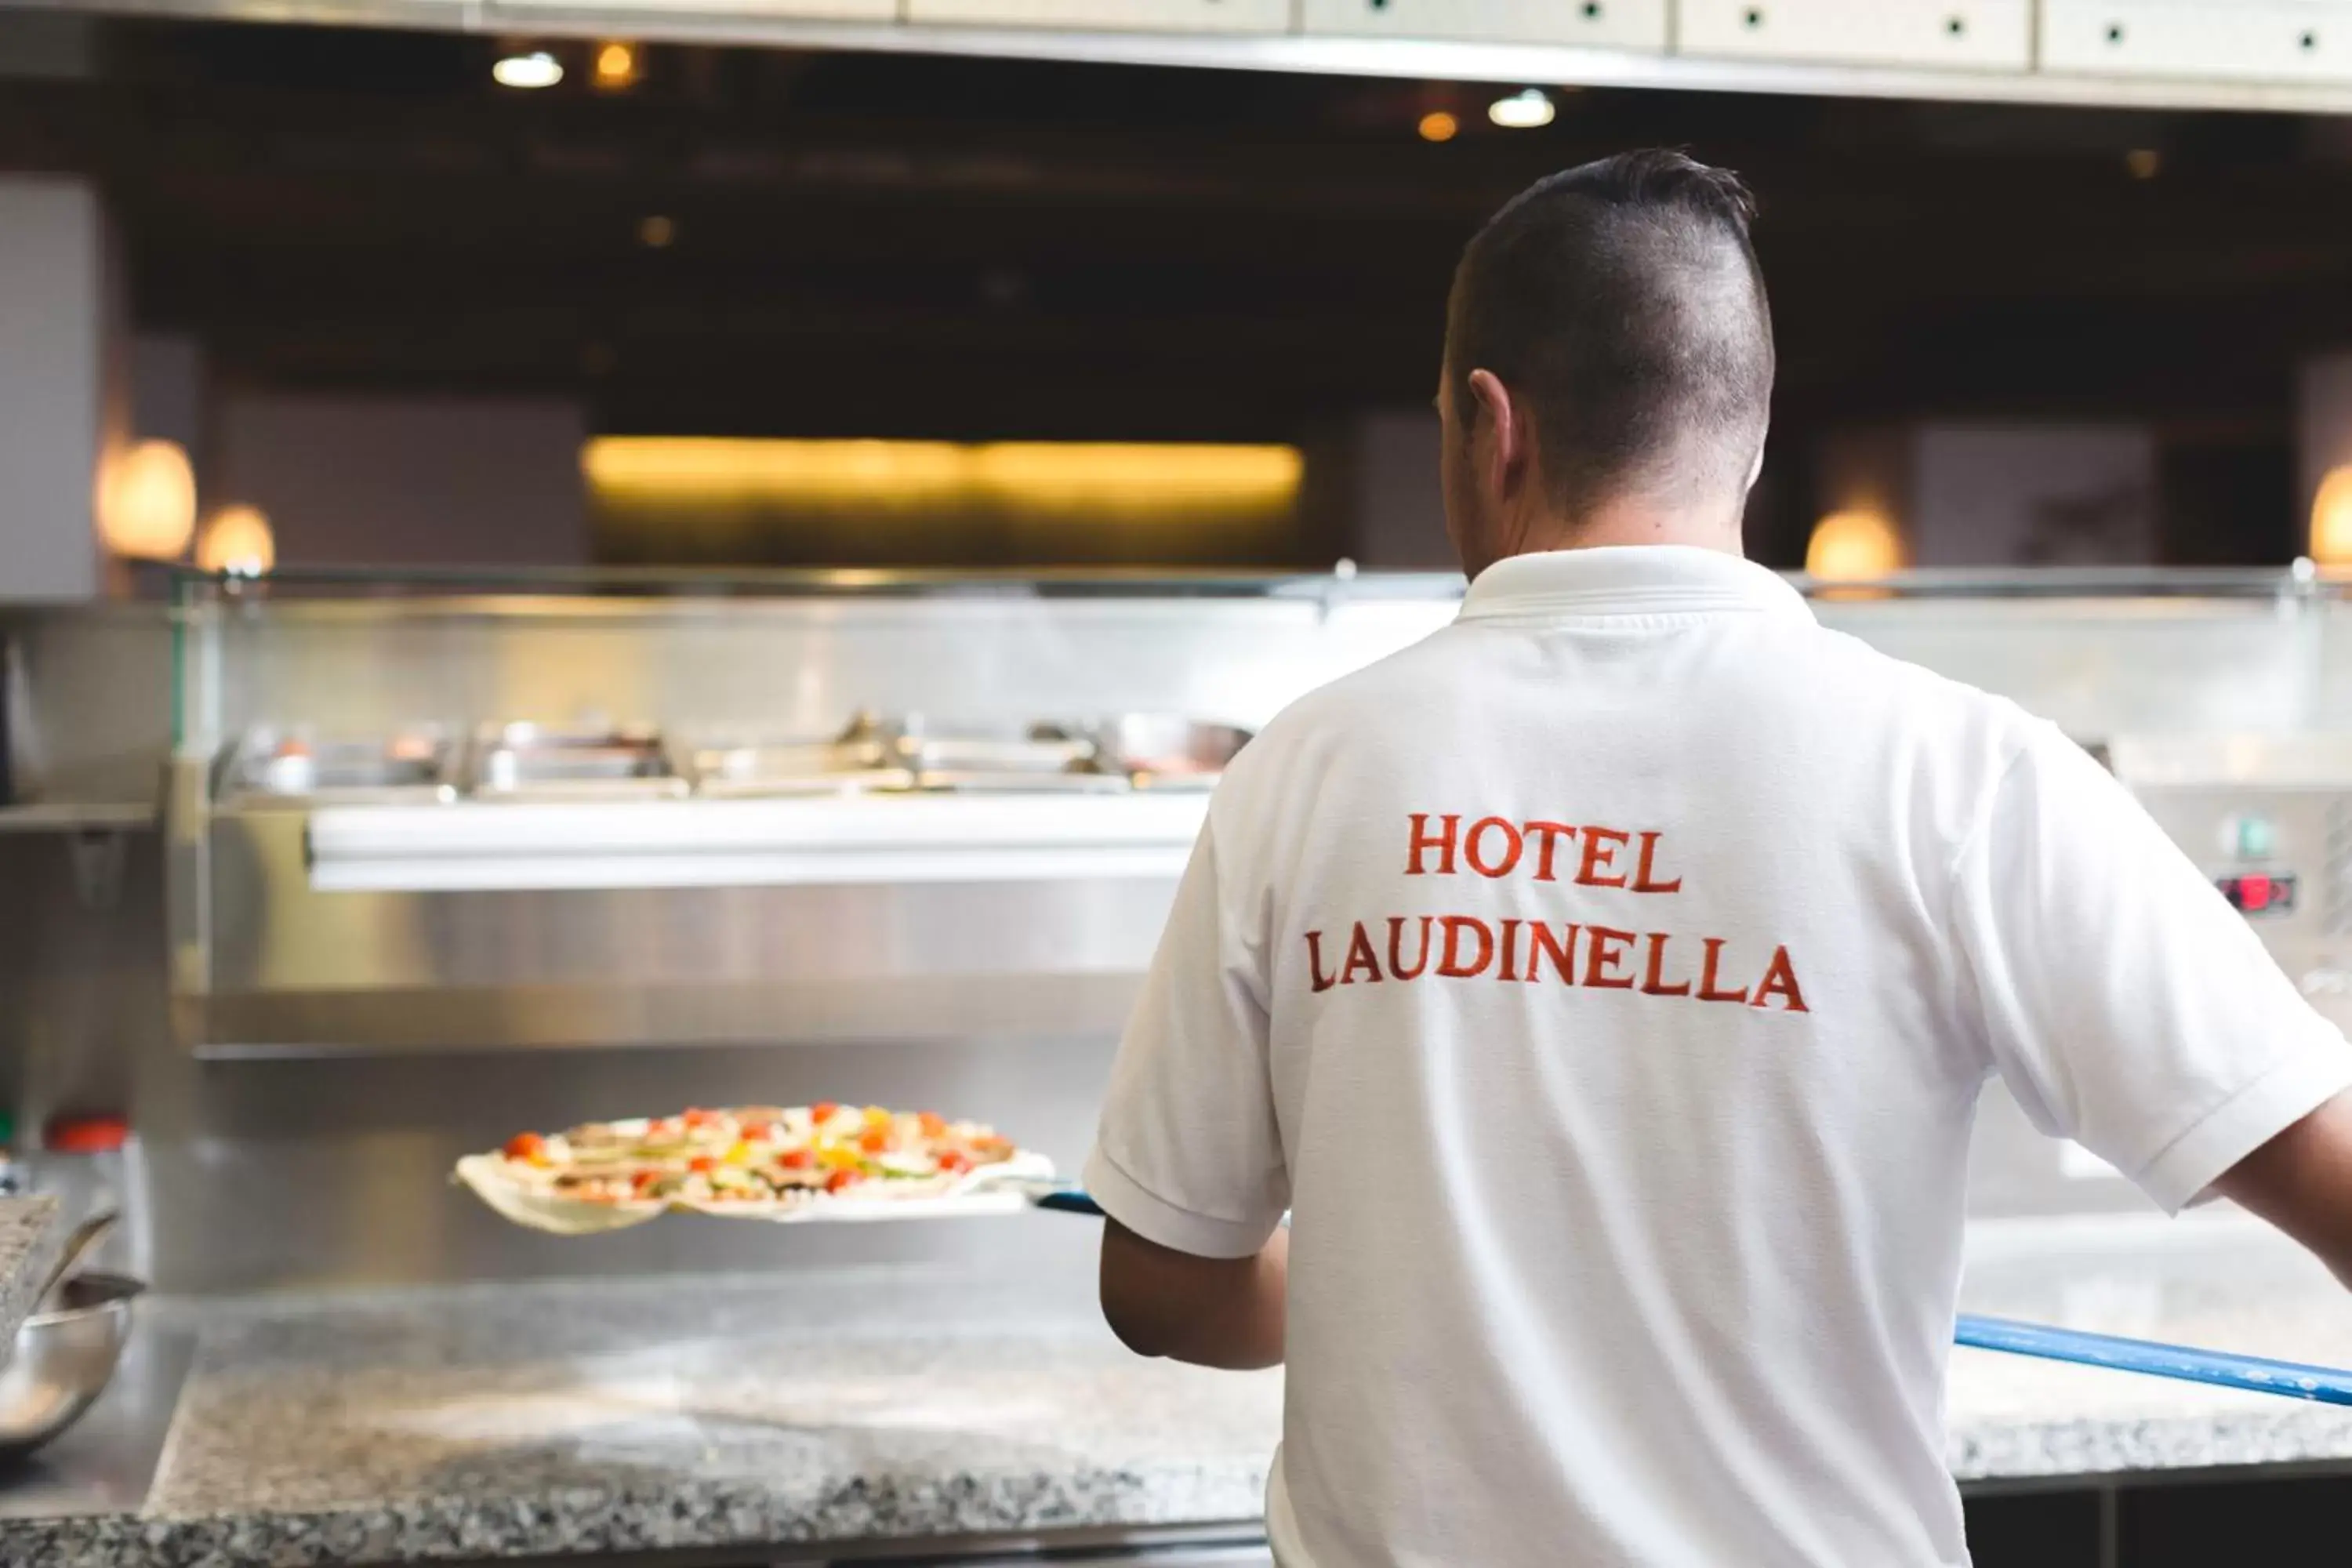 Staff in Hotel Laudinella